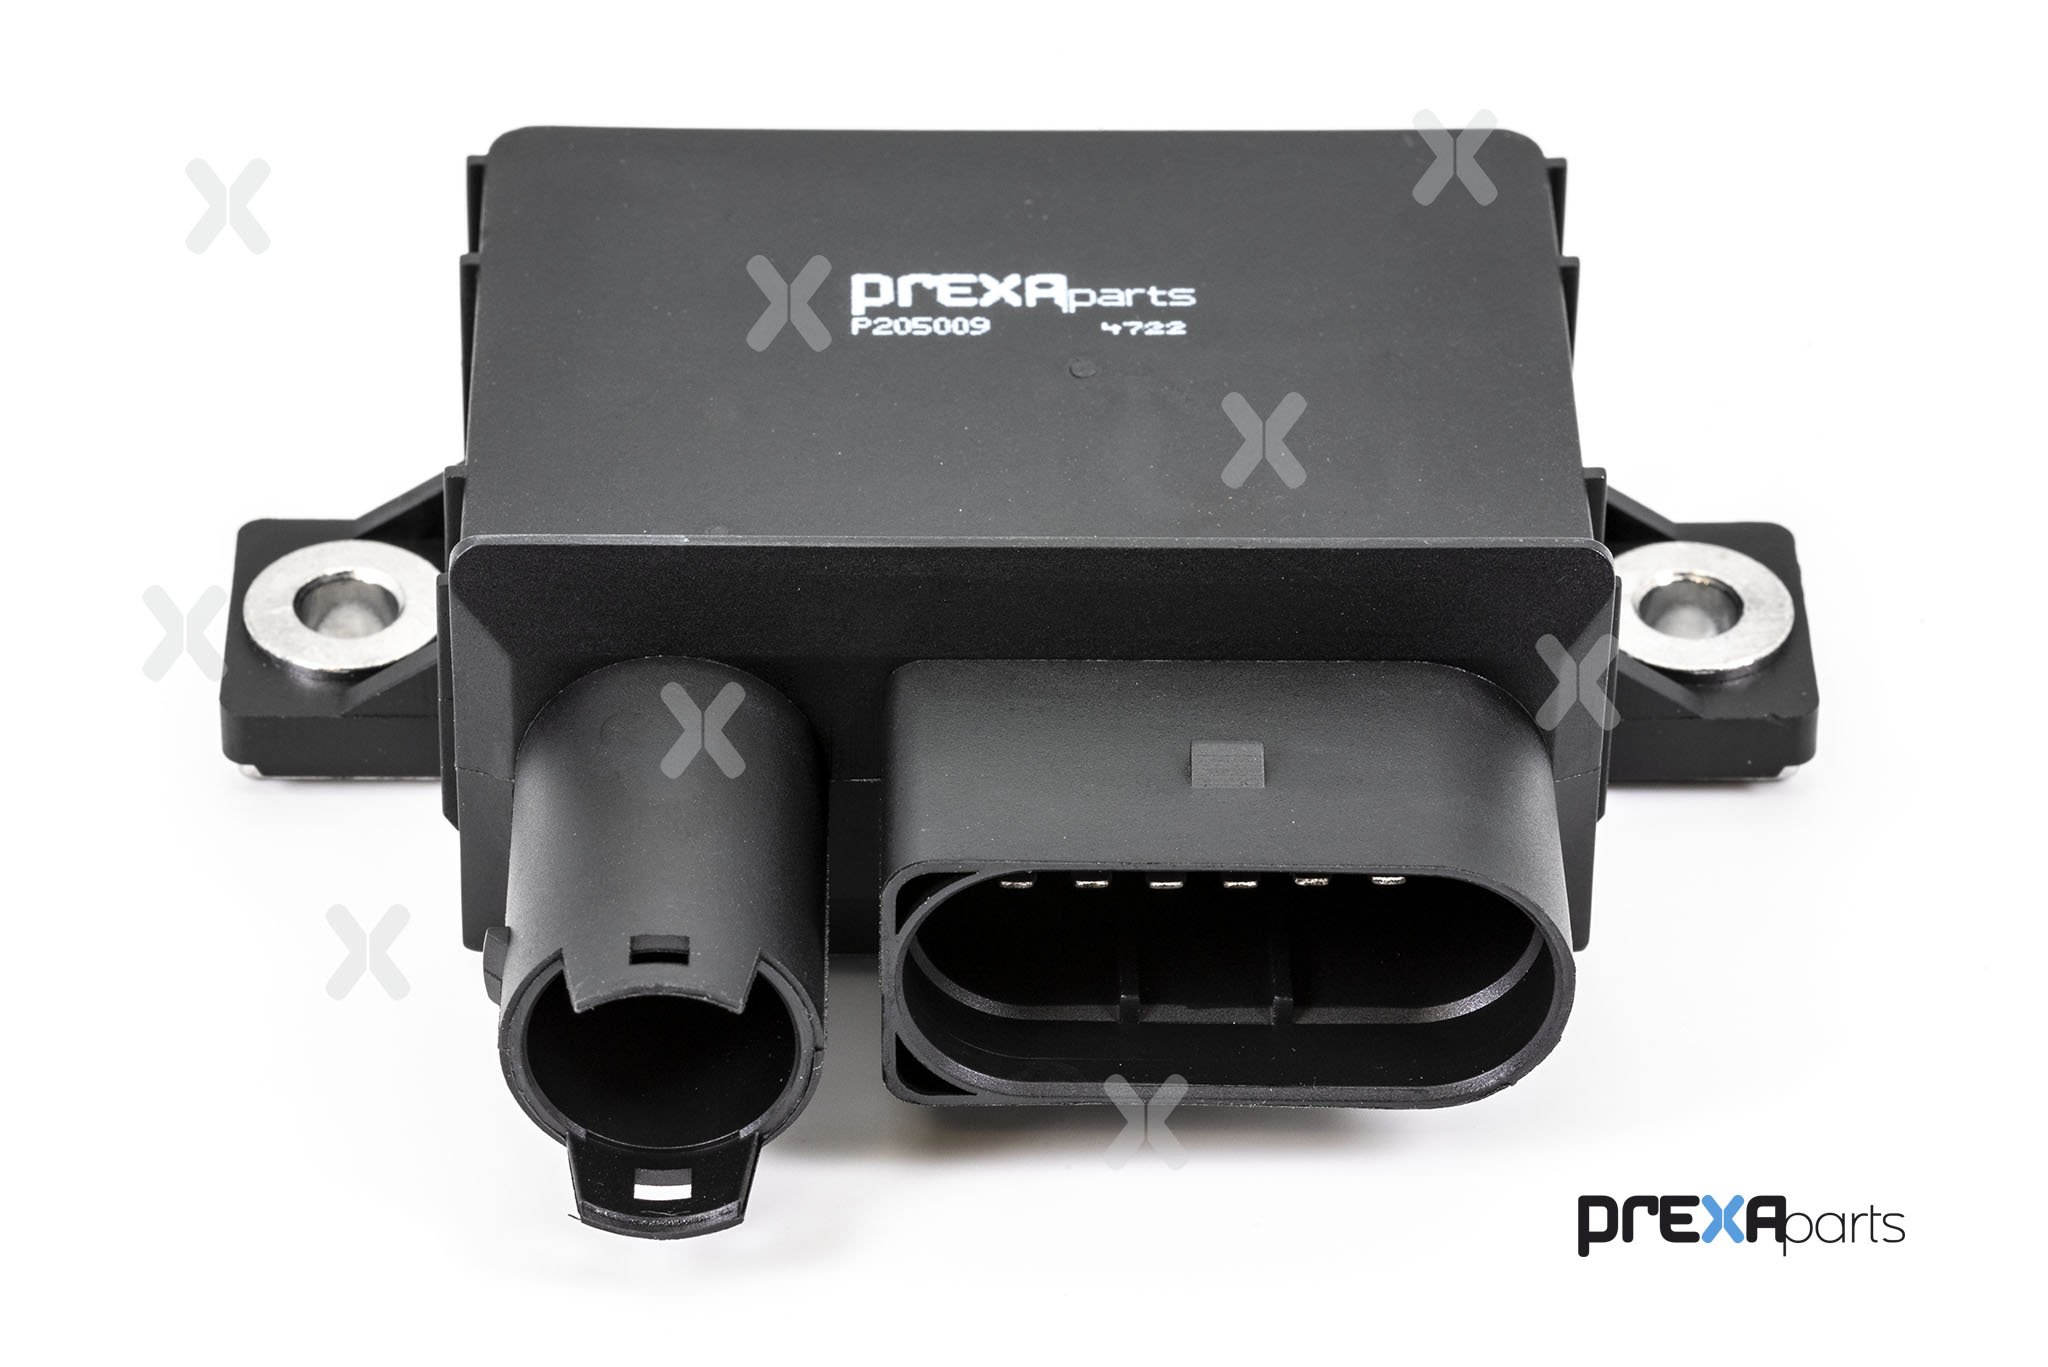 PREXAparts P205009